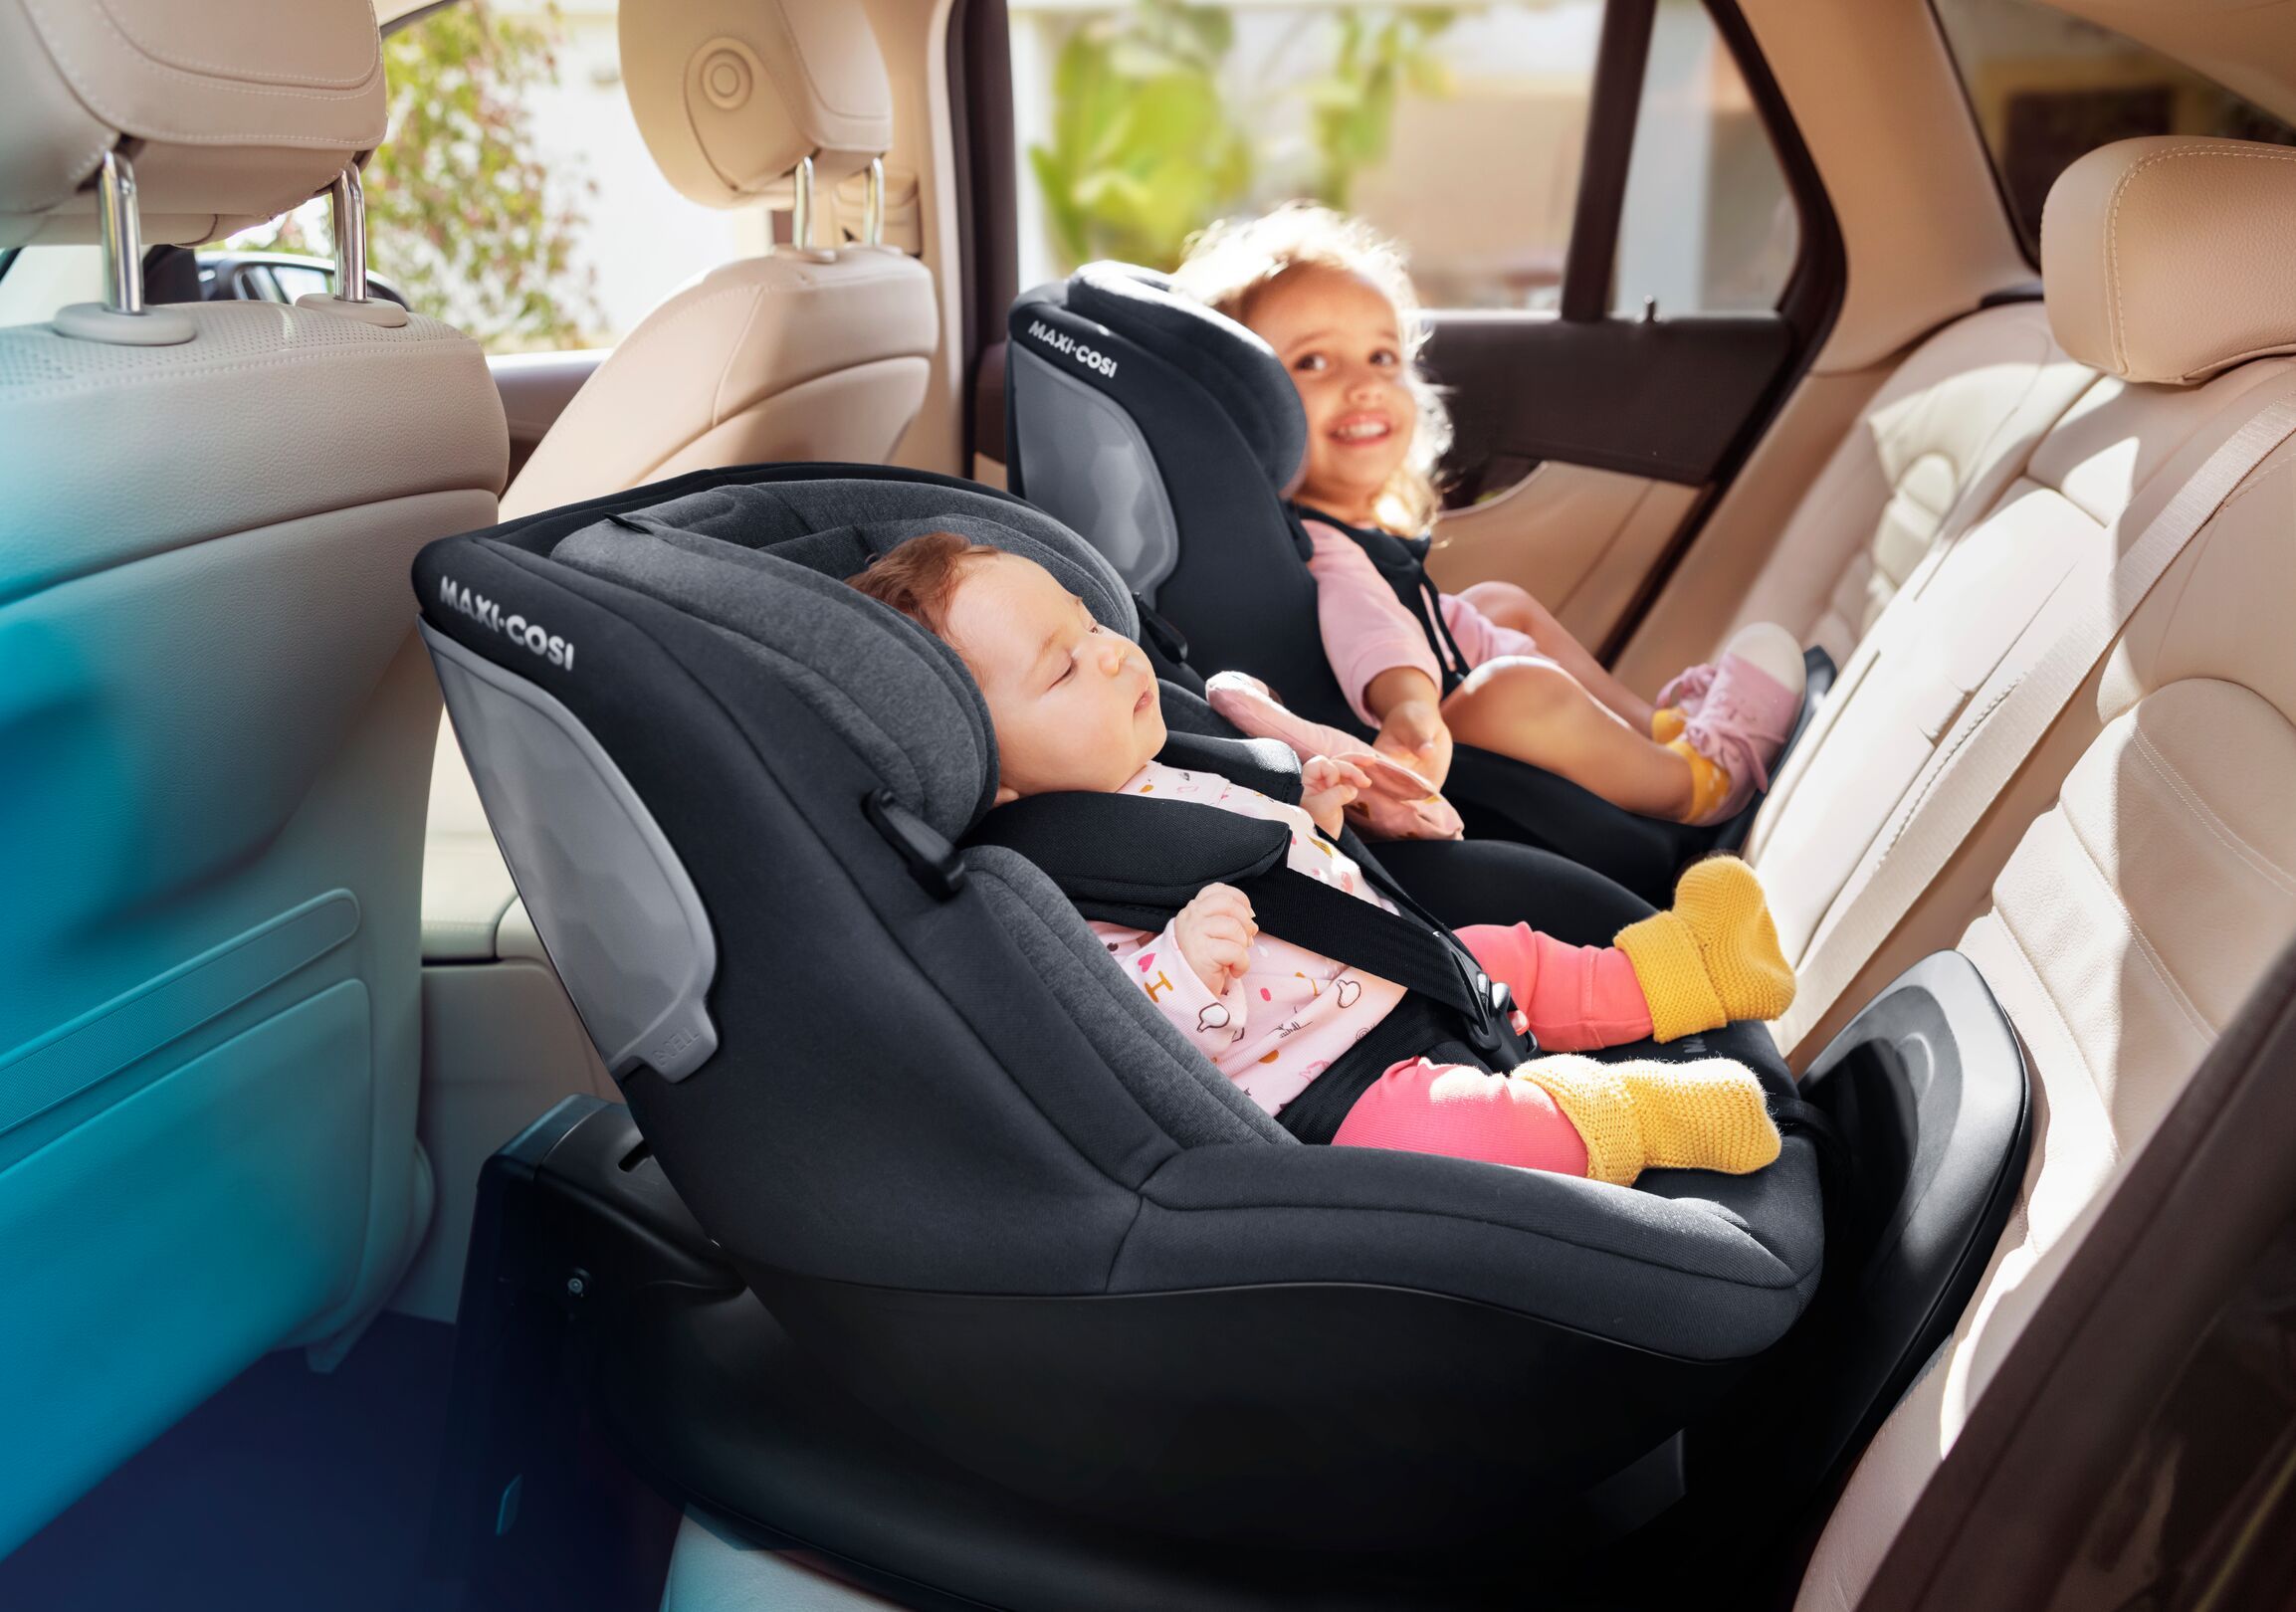 Mejor silla de coche para bebé 2020: ¿cuál compro? Tipos y comparativa